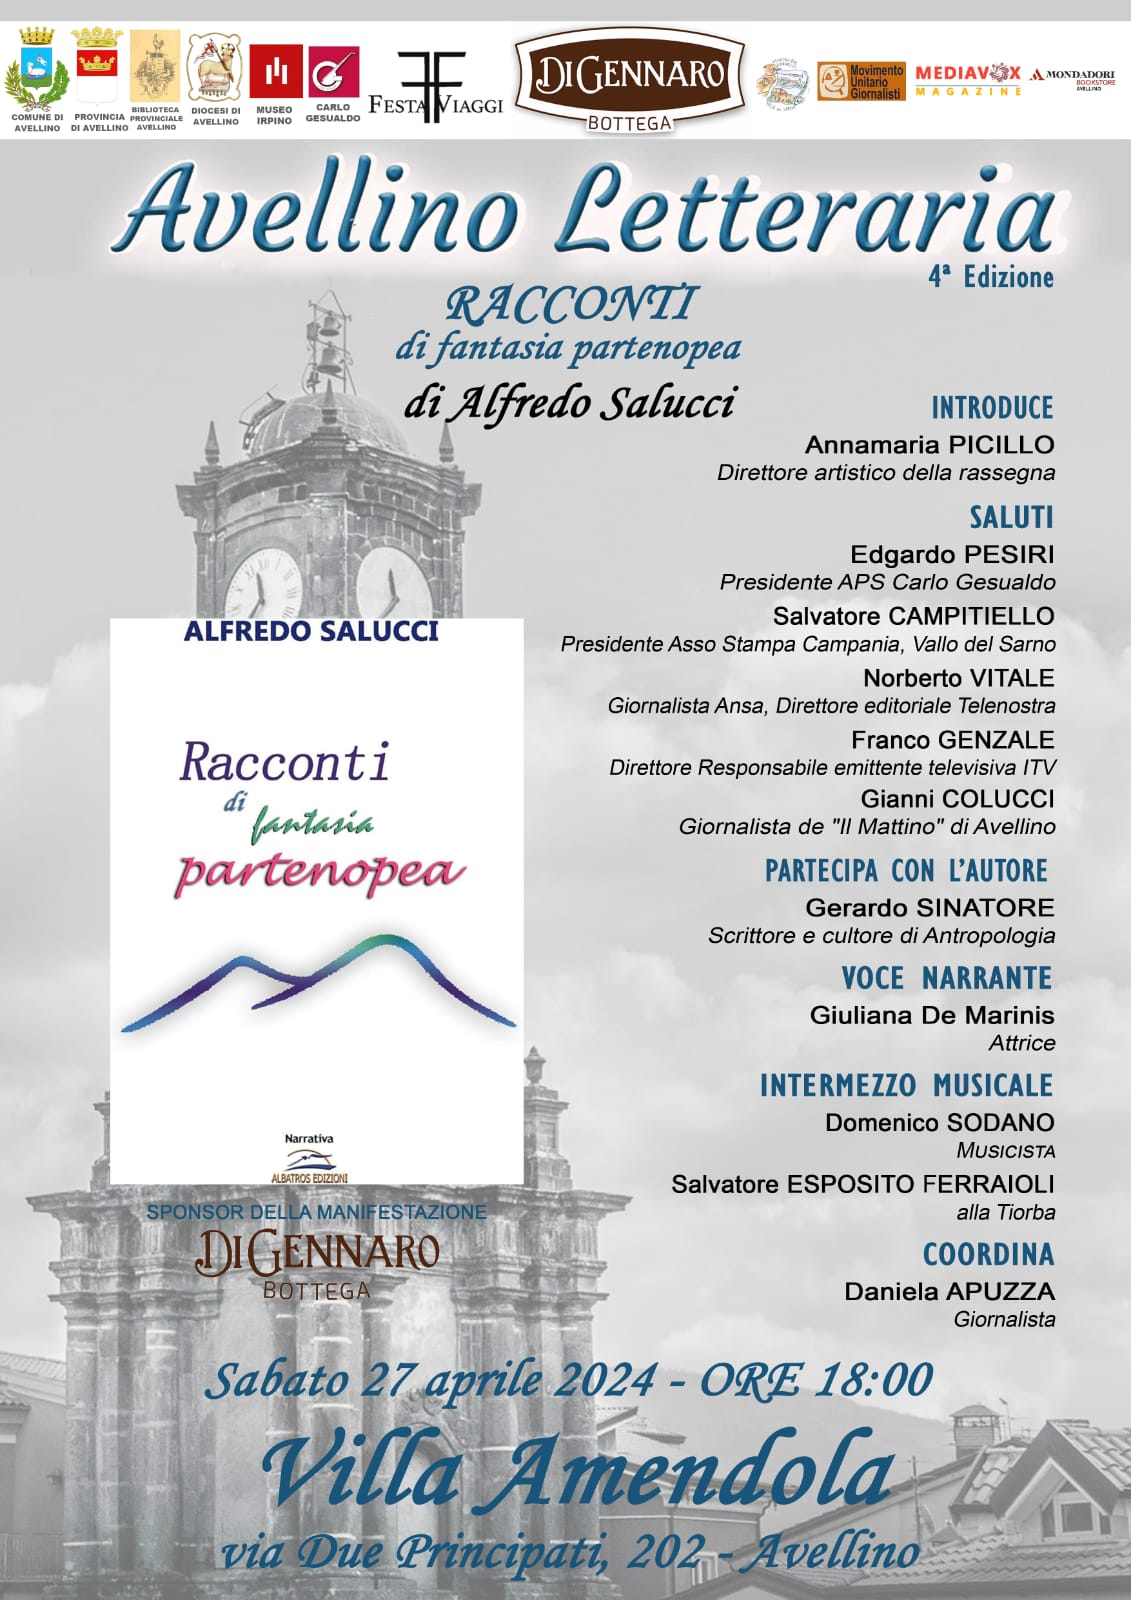 Alfredo Salucci, con “Racconti di fantasia partenopea”, inaugura il salotto di Avellino Letteraria 2024
